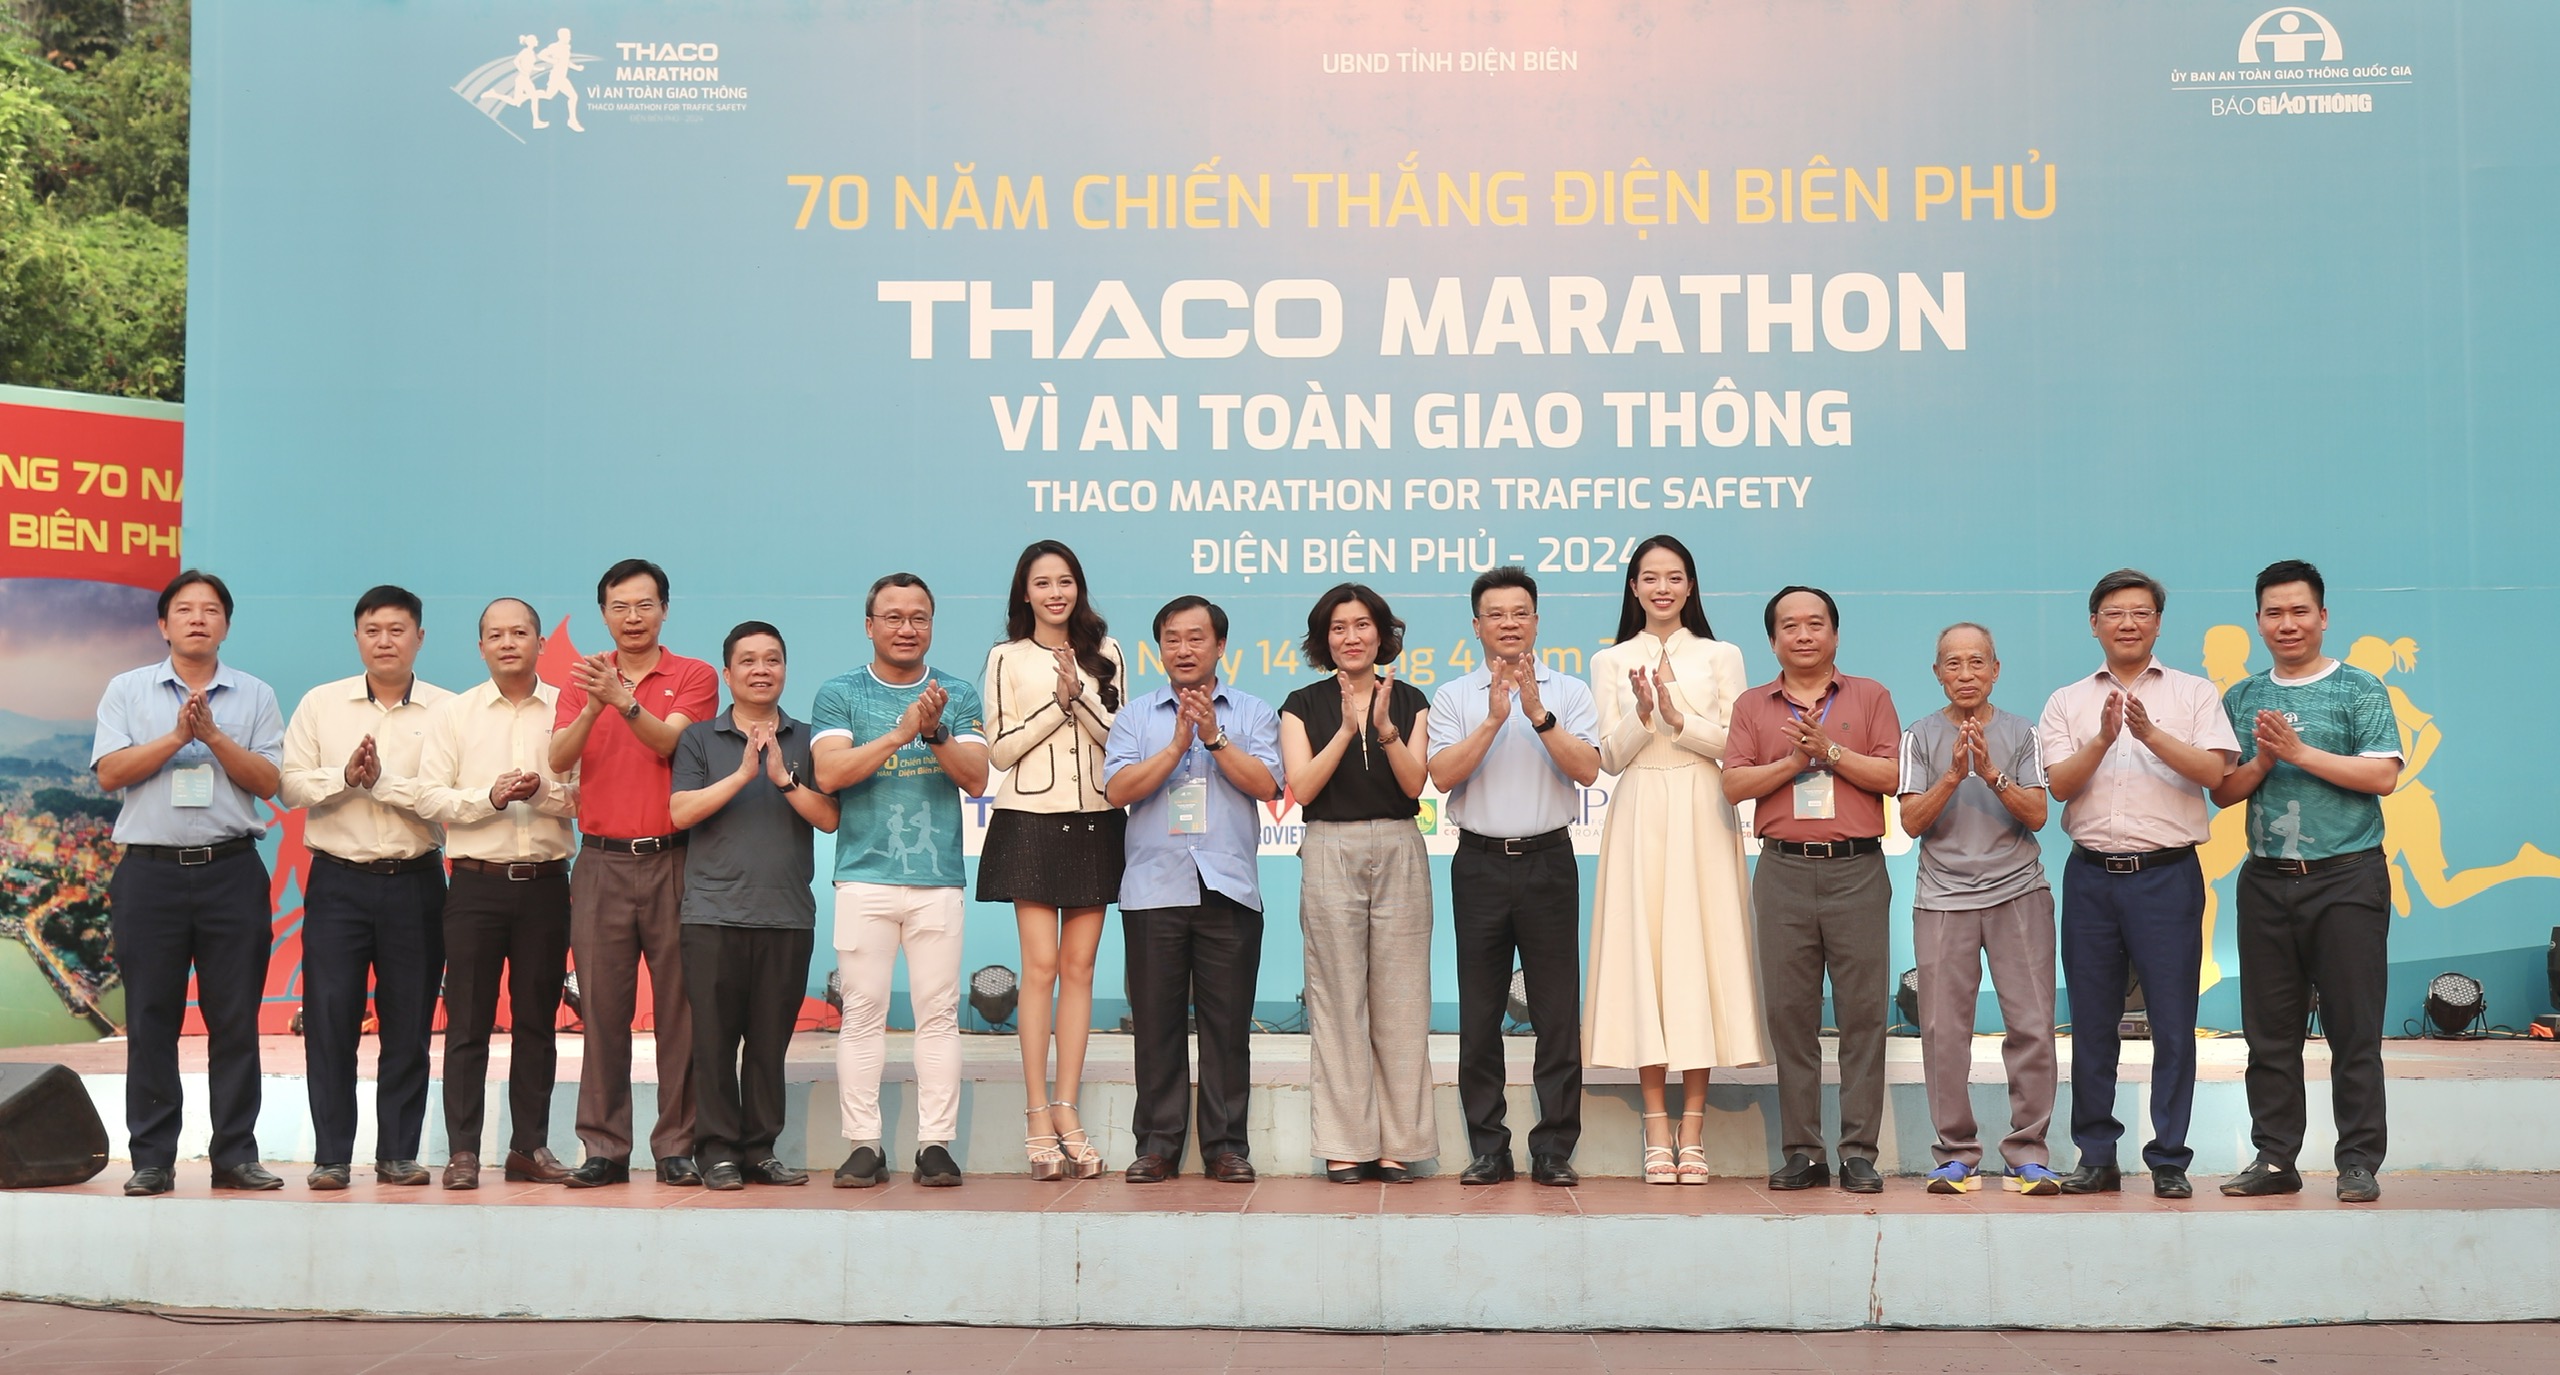 Trực tiếp: Giải THACO Marathon vì ATGT - Điện Biên Phủ 2024 thành công rực rỡ- Ảnh 1.